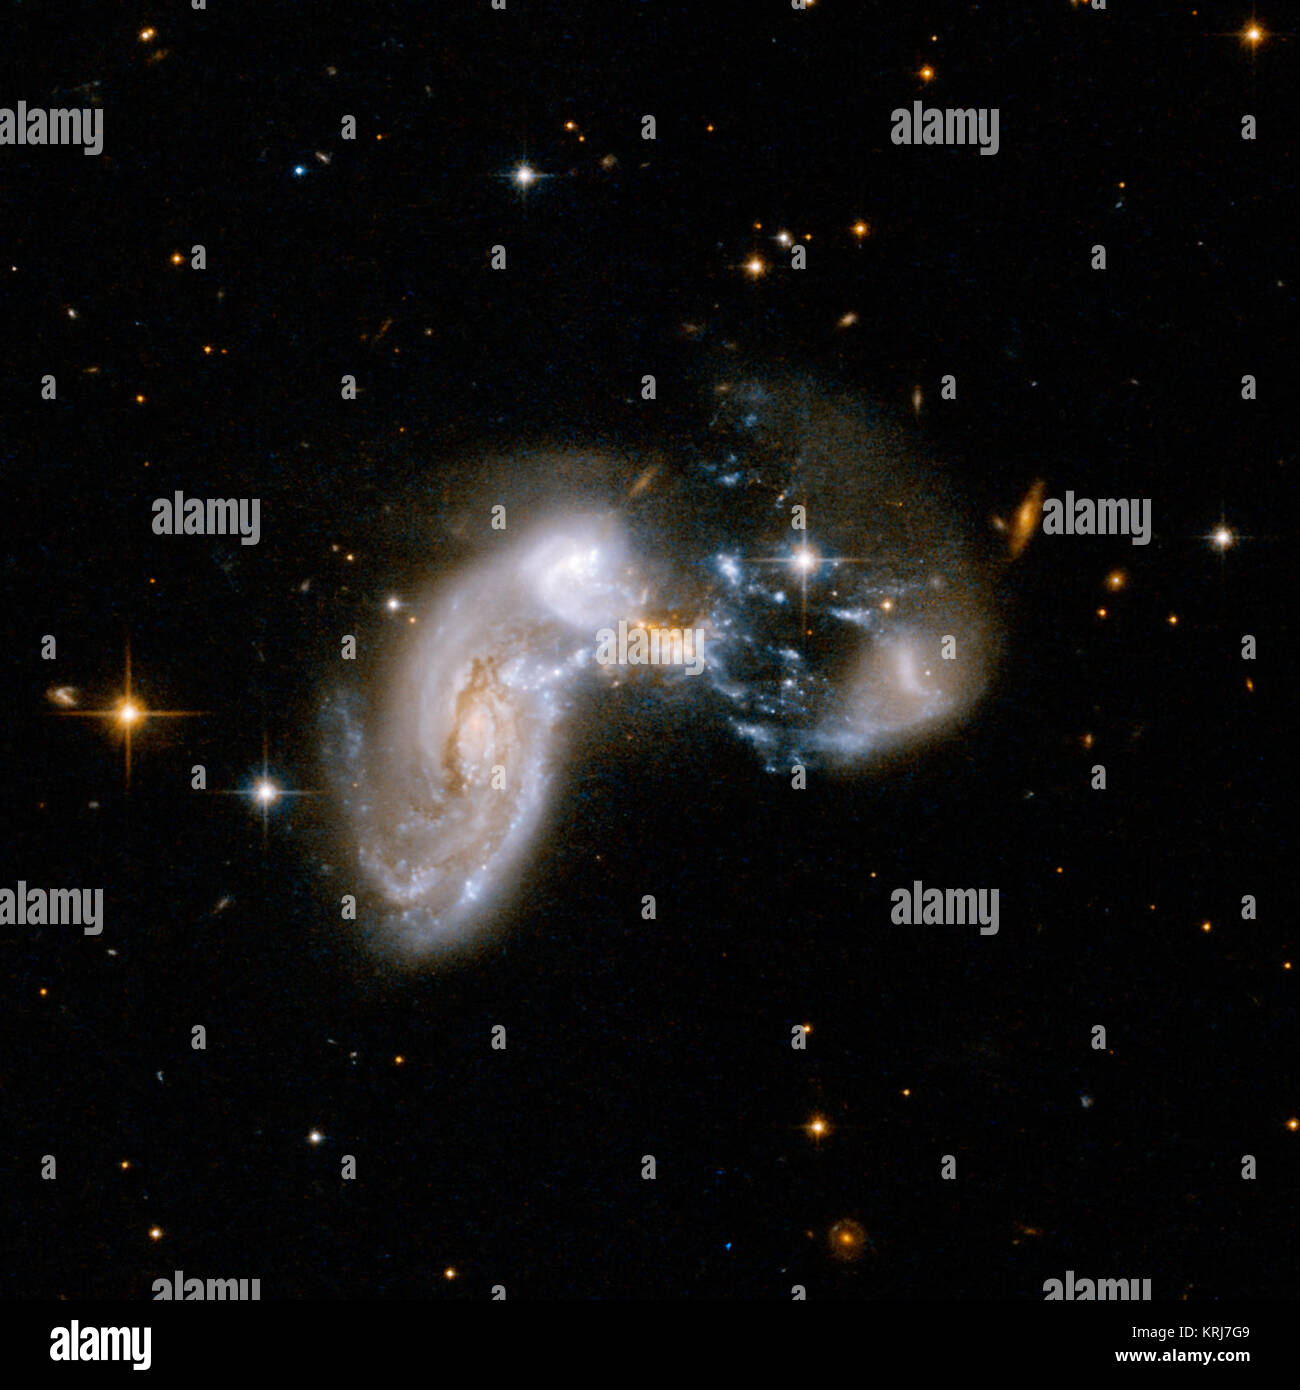 Die aktivsten Sterne bilden Galaxy im fernen Universum, die den Spitznamen "Baby Boom" Galaxie, Lose ähnelt der Galaxie hier gezeigt, genannt Zw II 96. Während Zw II 96 ist etwa 500 Millionen Lichtjahre entfernt - Jahre entfernt, Baby Boom liegt 12,3 Milliarden Lichtjahre entfernt und erscheint in Bildern als nur ein Verschmieren. Zw II 96 und den Baby Boom Galaxy werden sowohl als Starbursts bekannt, weil sie jedes Jahr zu Lasten neuer Sterne. Zw II 96 ist das Ergebnis von mehreren Galaxien miteinander kollidieren, die Auslösung der Geburt von Sternen. Beweis von NASA's Hubble Space Telescope zeigt Baby Boom ist auch das Ergebnis der Stockfoto